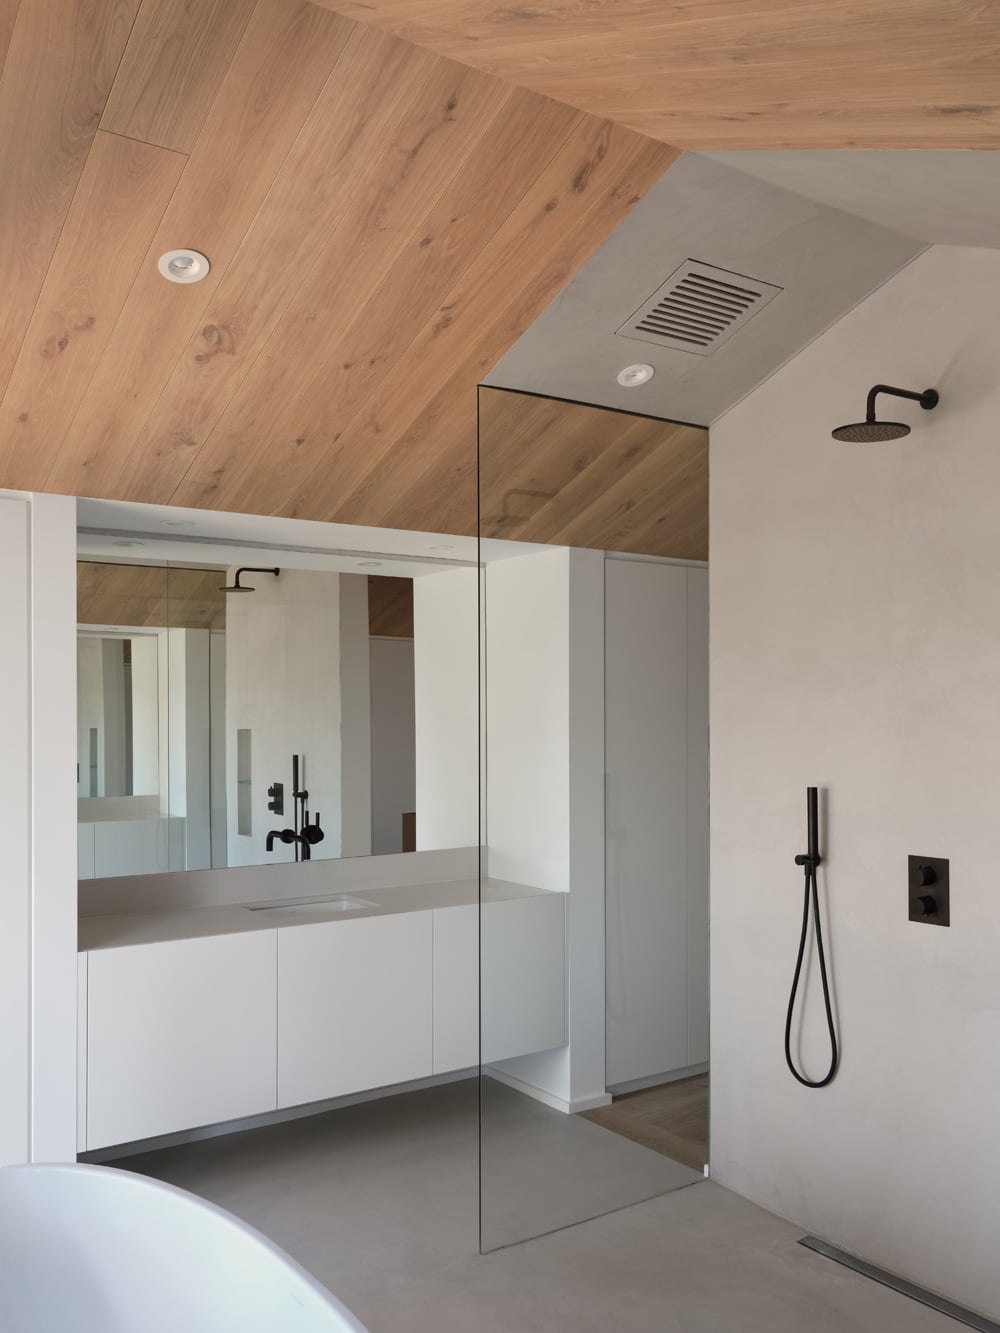 Duschbereich im großen Badezimmer, Foto: Doublespace Photography